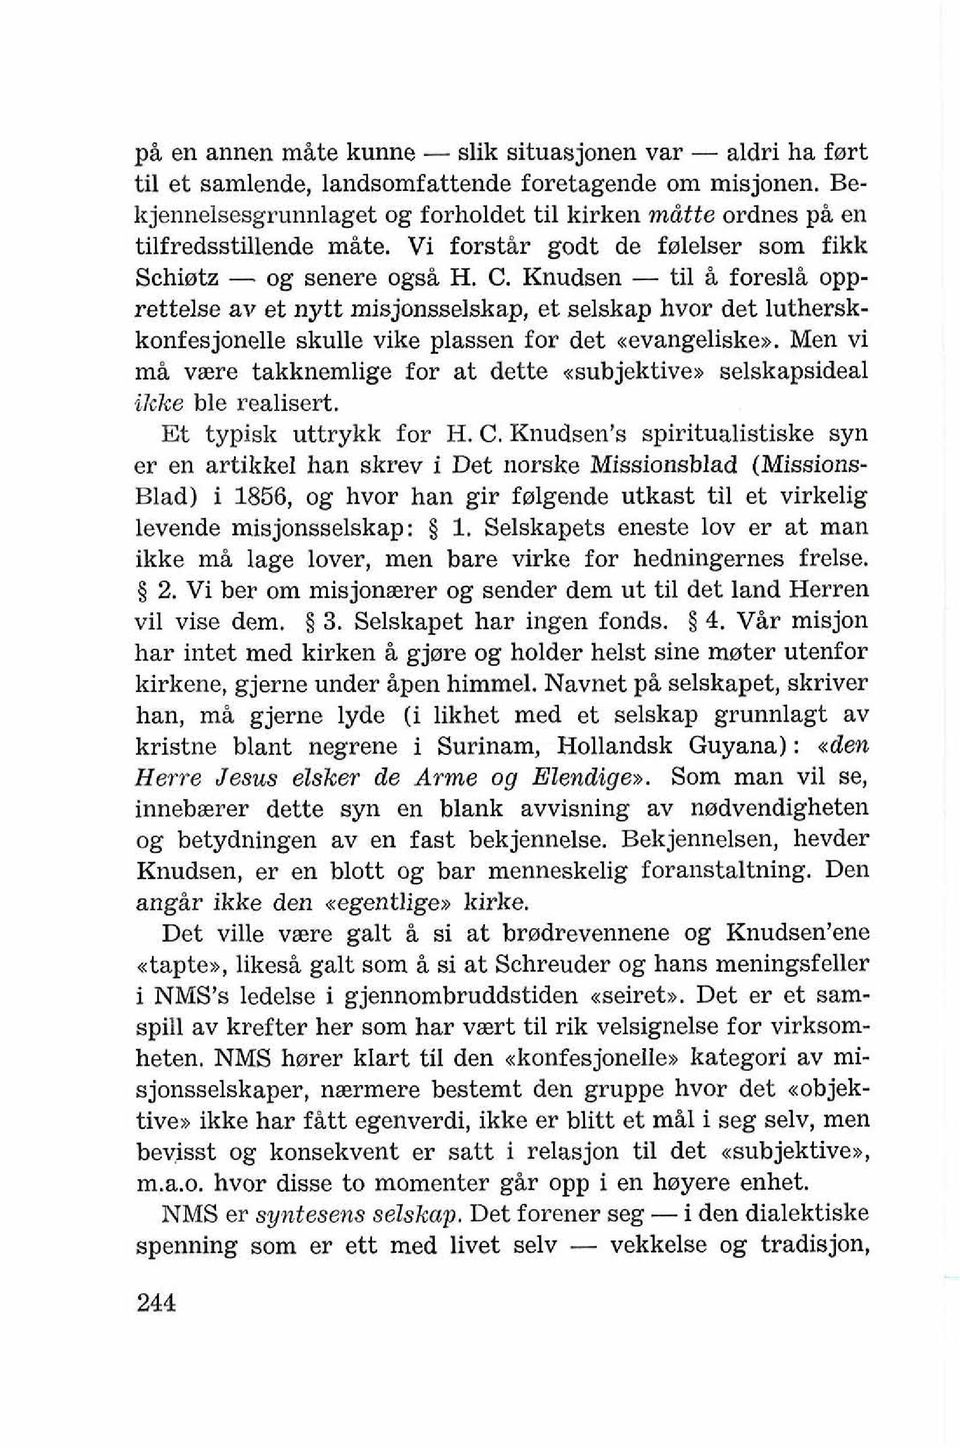 Knudsen - ti1 B foresli opprettelse av et nytt misjonsselskap, et selskap hvor det lutherskkonfesjonelle skulle vike plassen for det uevaugeliskex.